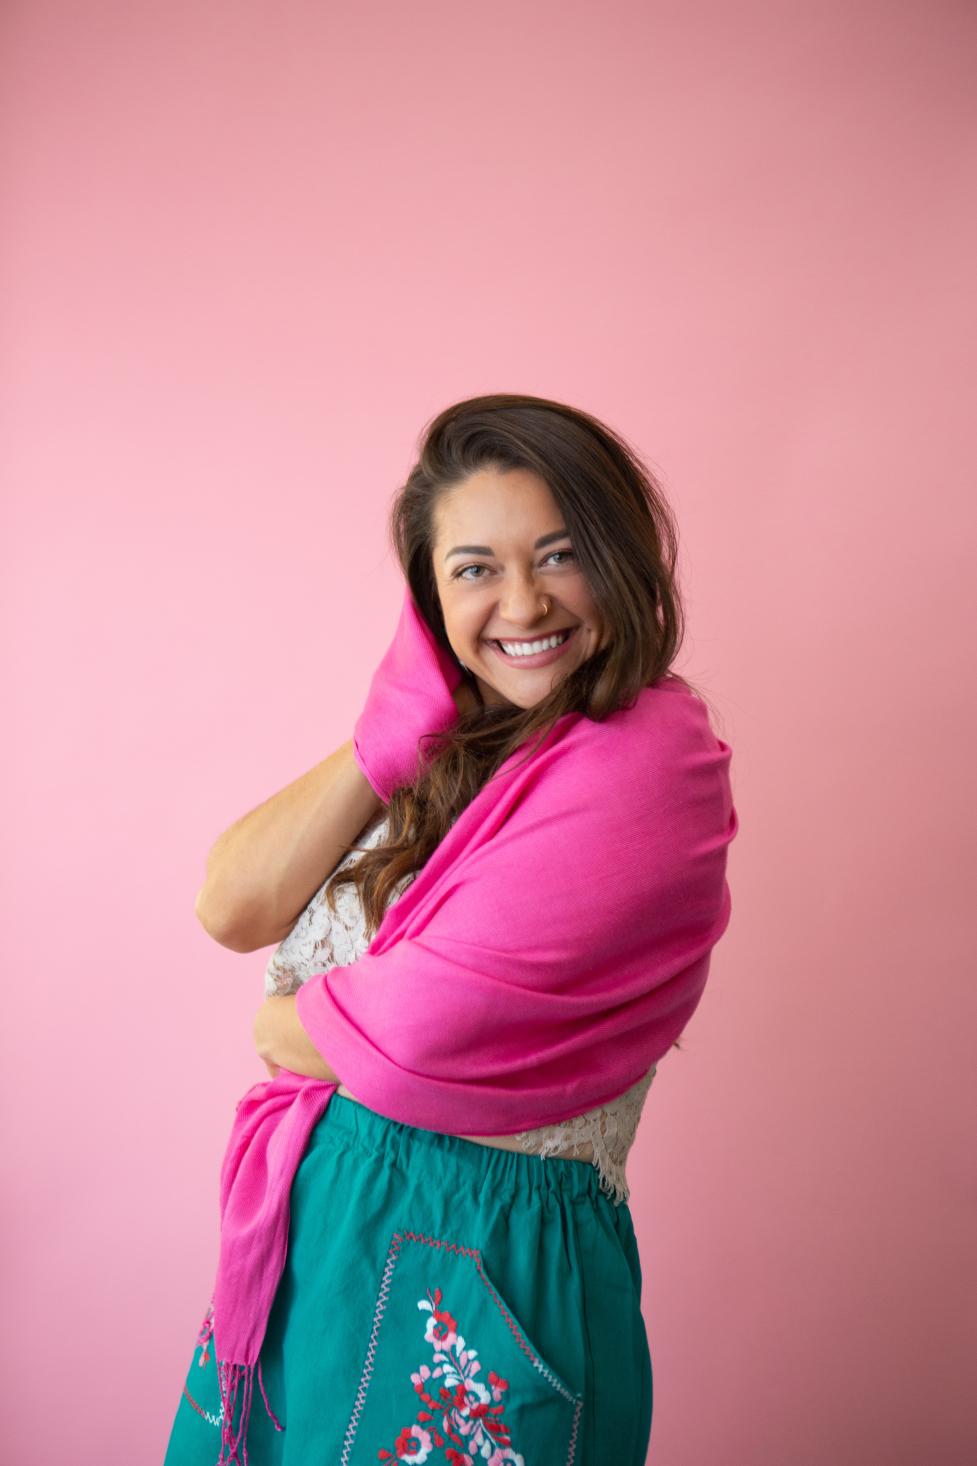 Maya Sol smiling at the camera wearing a bright pink shawl and turquiose skirt.